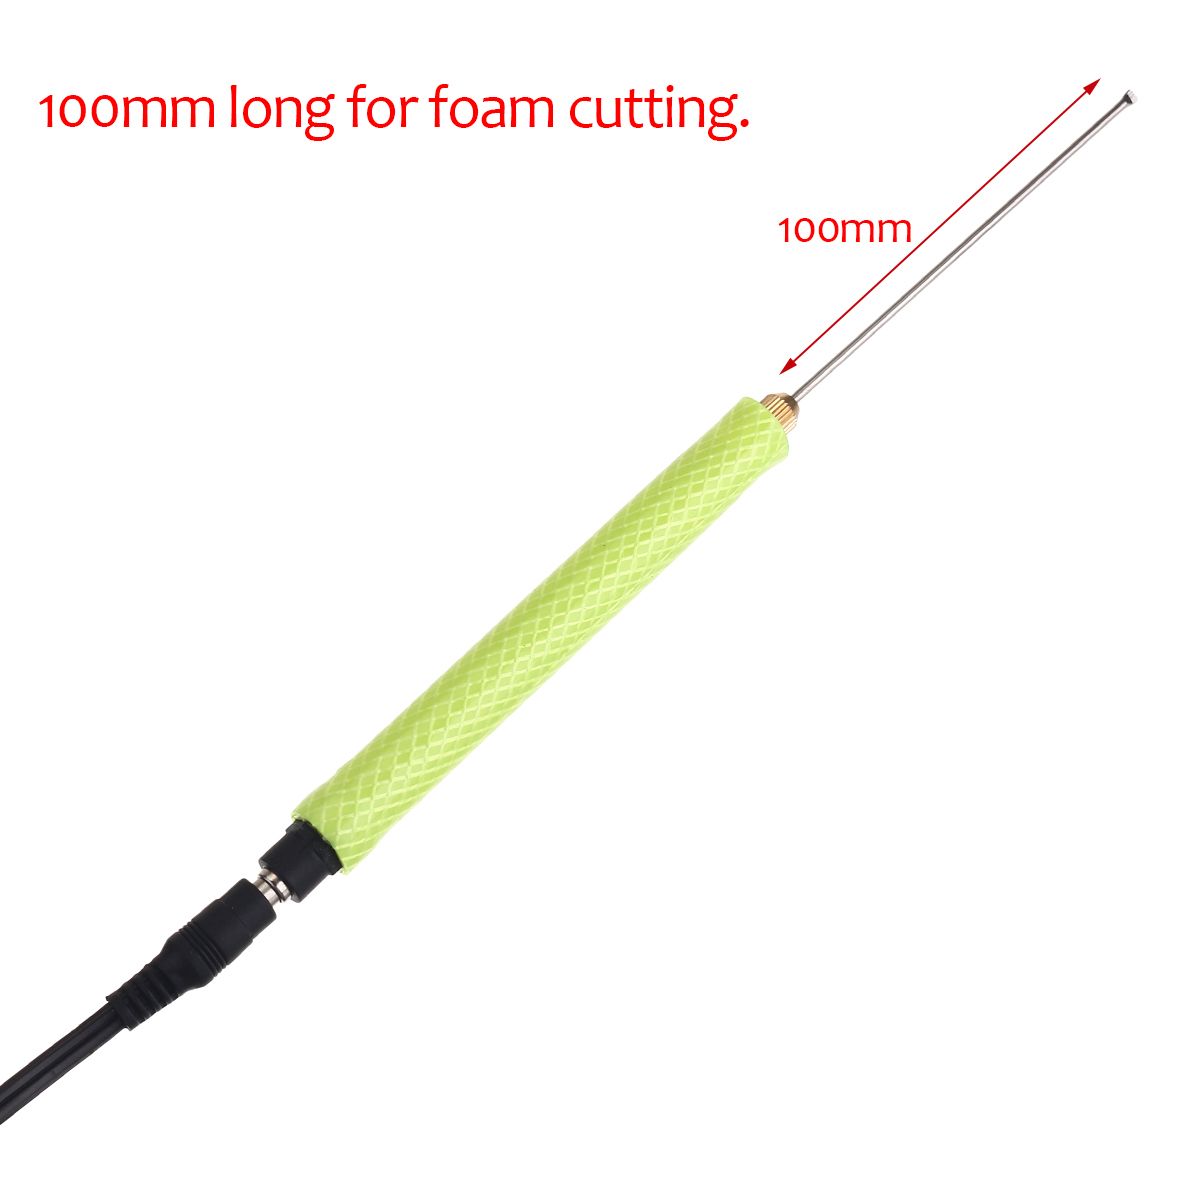 10cm-Electric-Foam-Cutter-Pen-Styrofoam-Polystyrene-Cutting-DIY-Craft-Tool-AC100-240V-1680763